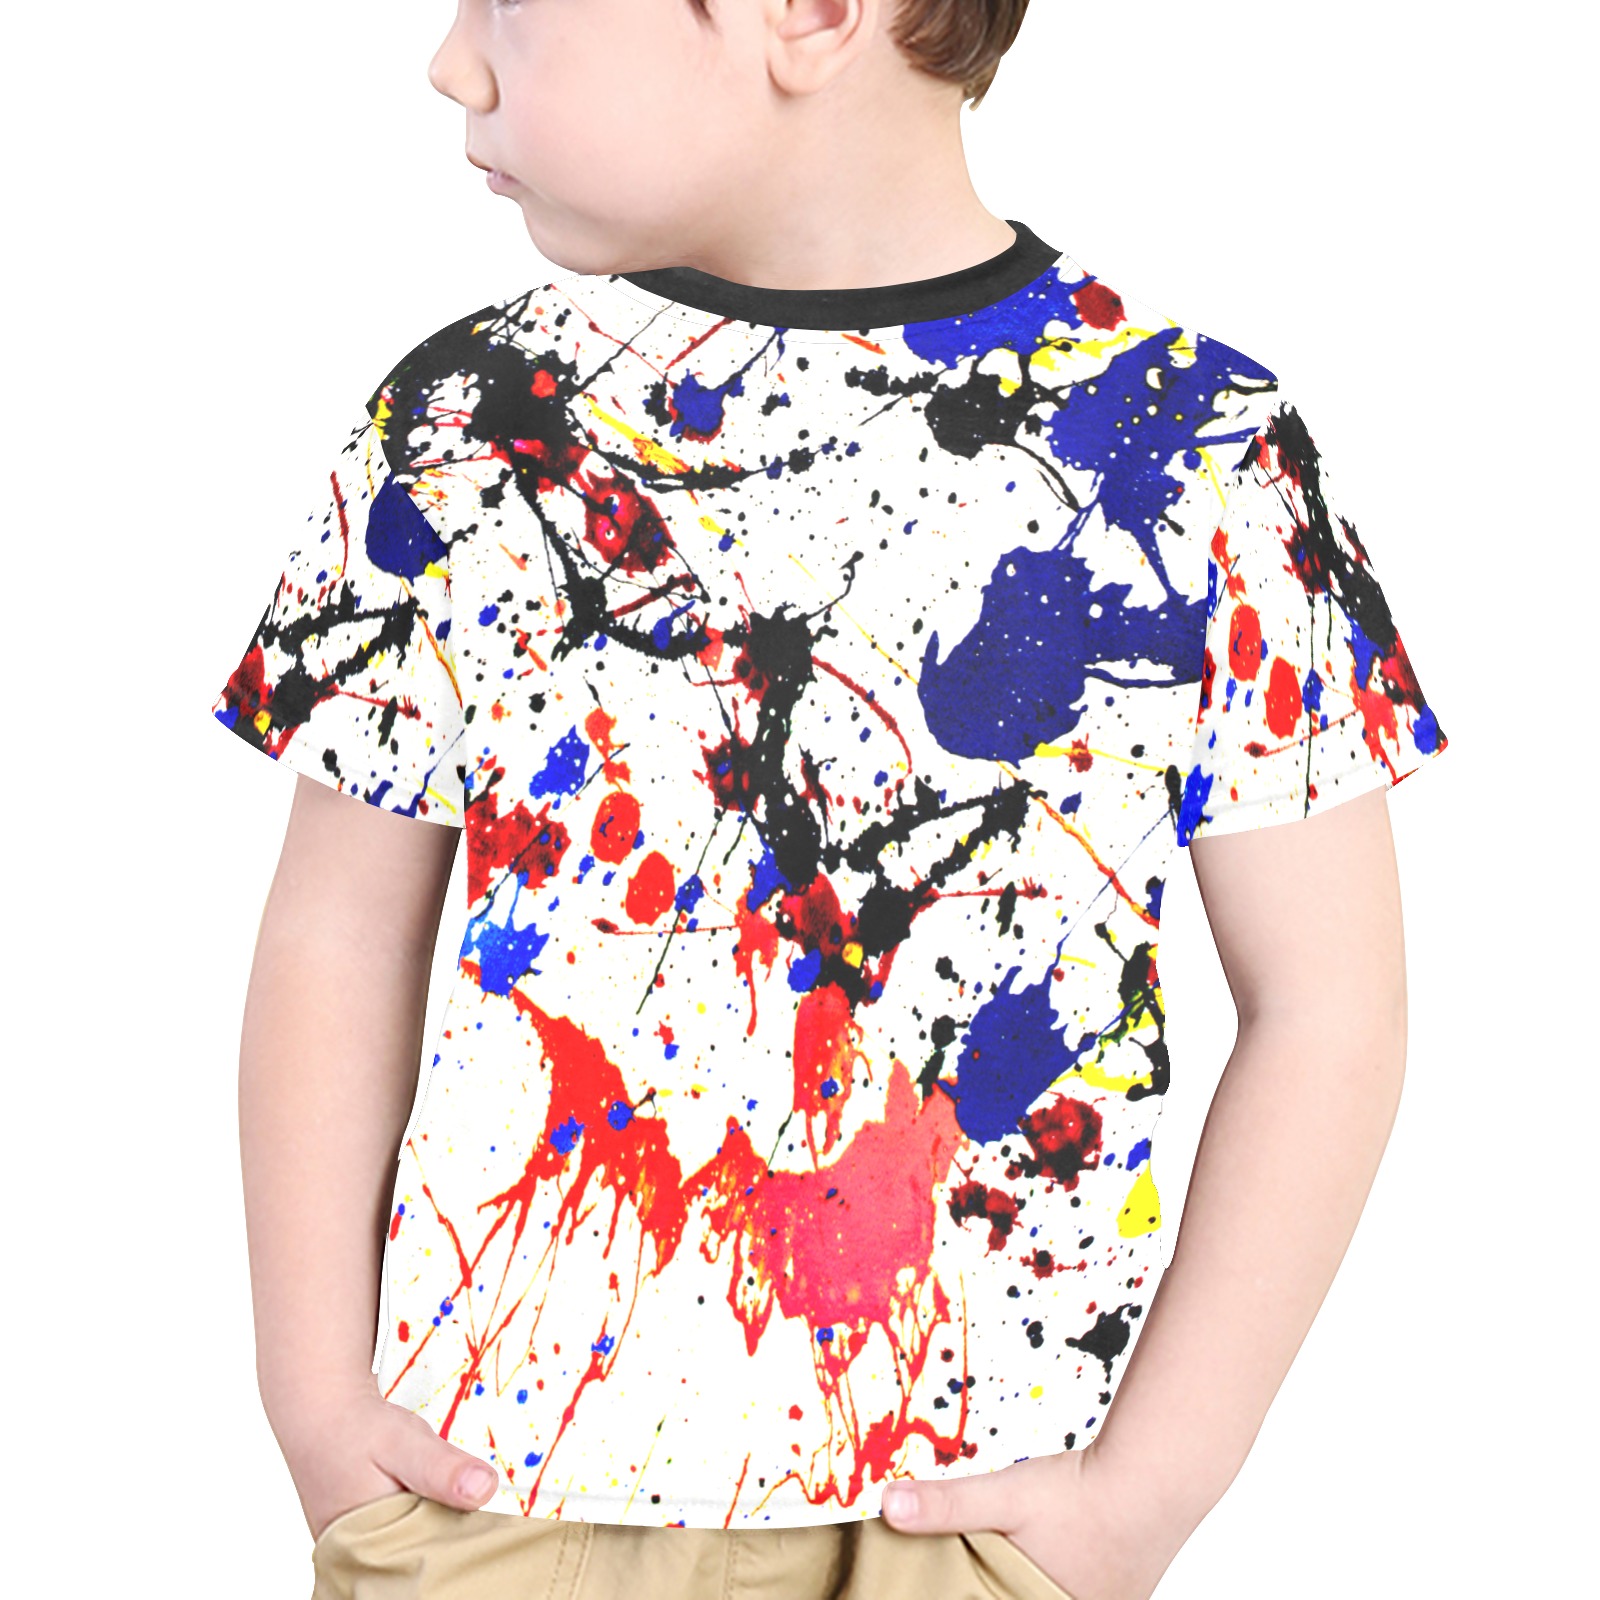 Blue & Red Paint Splatter Little Boys' All Over Print Crew Neck T-Shirt (Model T40-2)